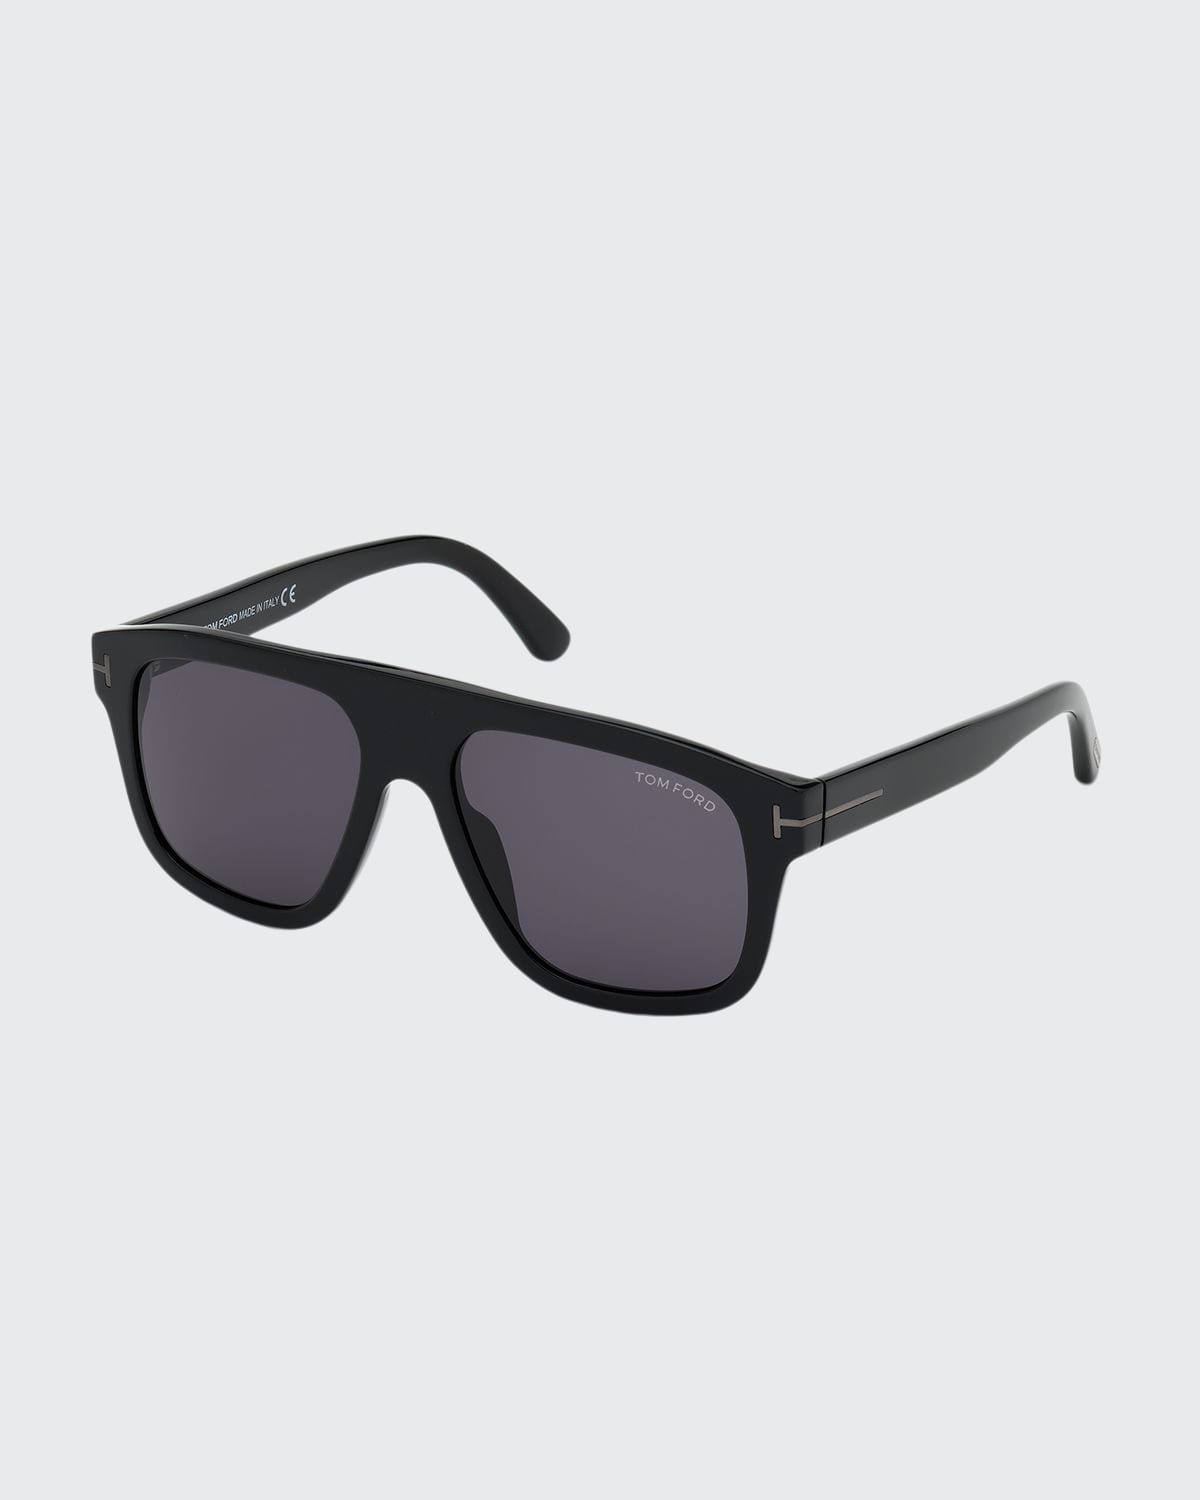 TOM FORD Men's THOR Square Sunglasses | Smart Closet